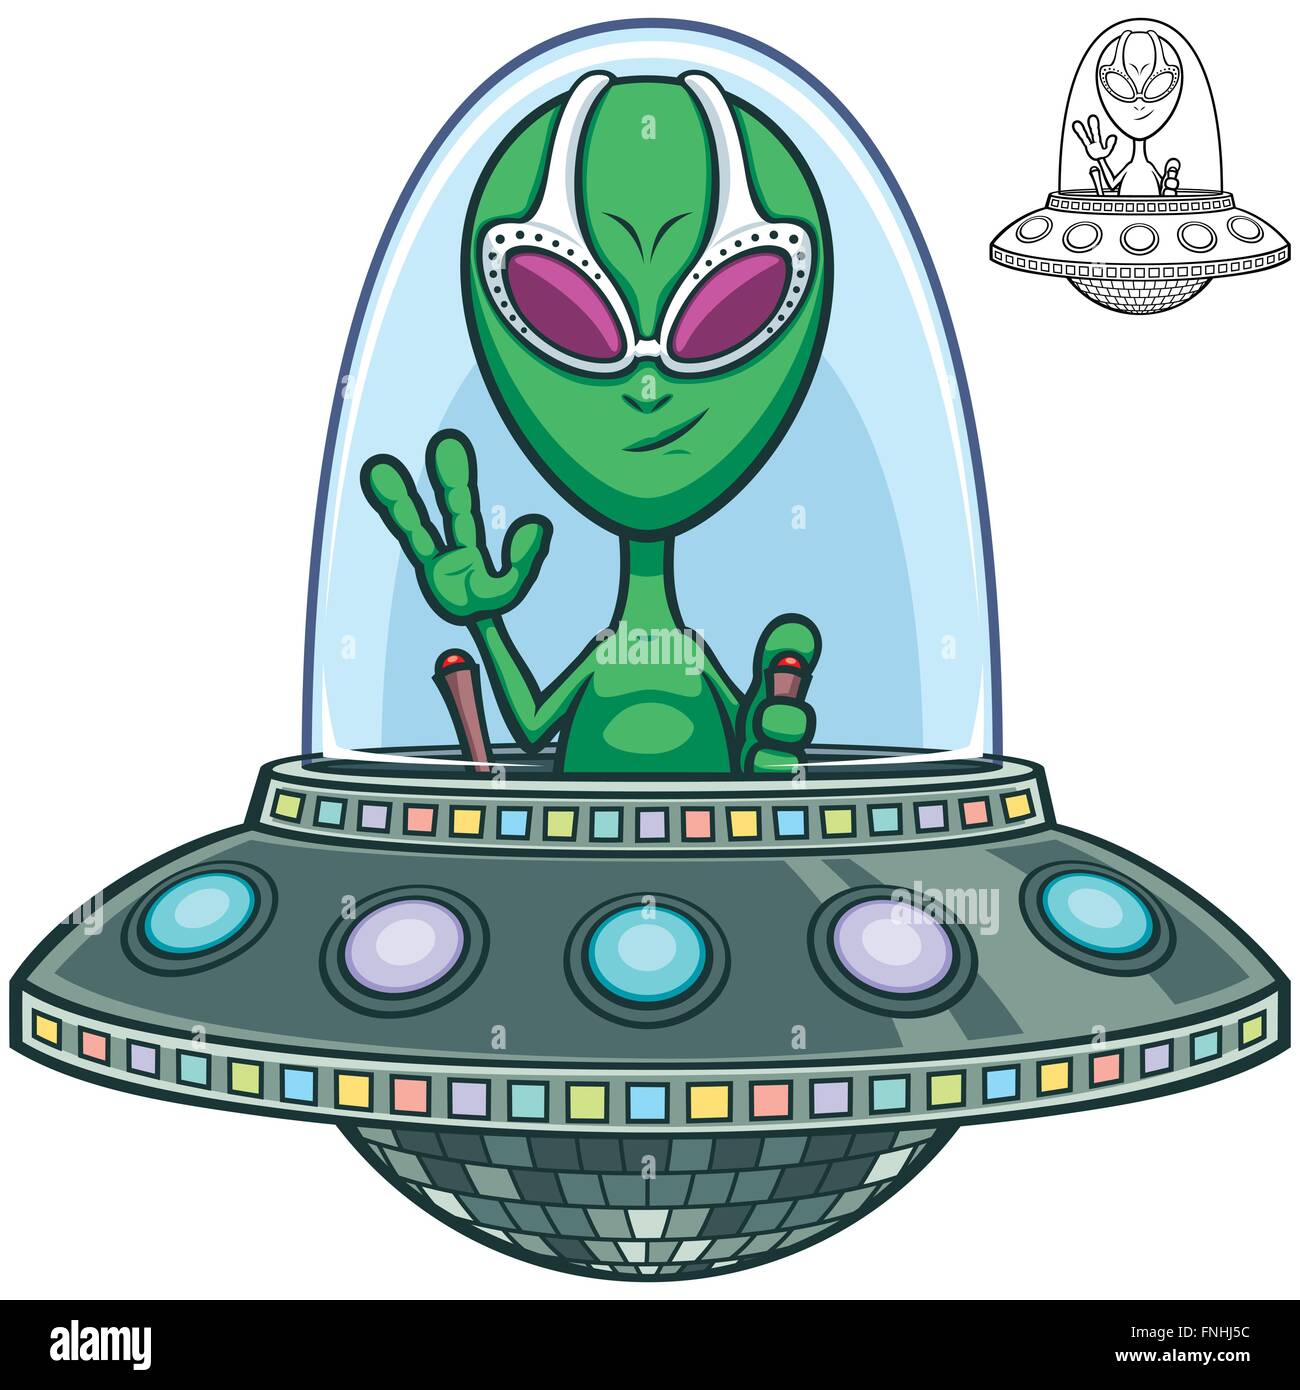 Cartoon of alien flying saucer. Stock Vector